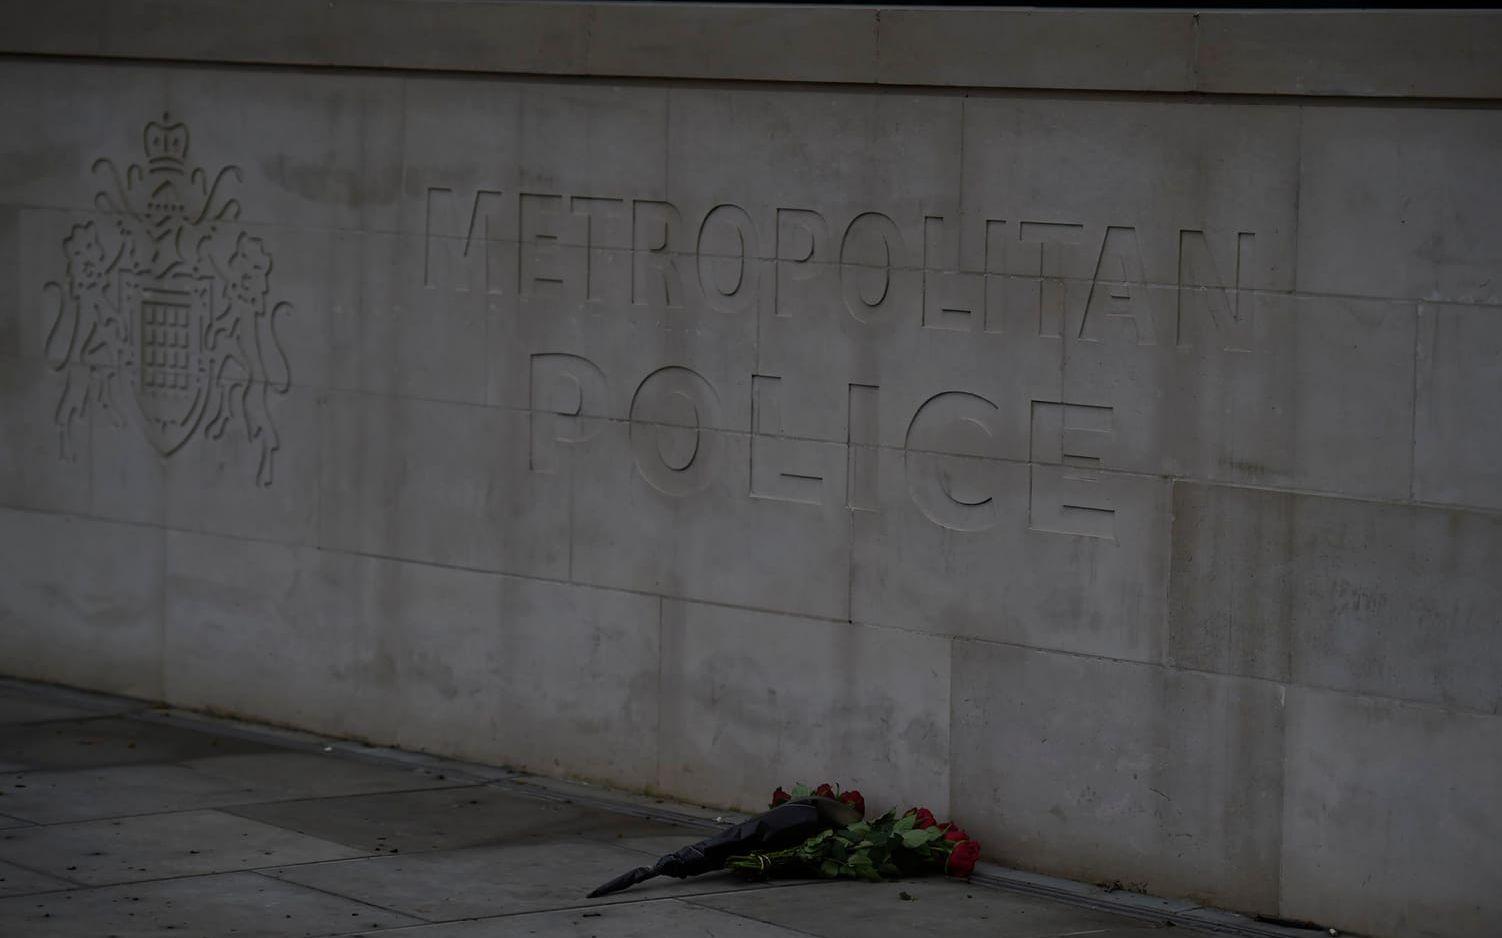 London dagen efter attacken. FOTO: Olof Ohlsson
